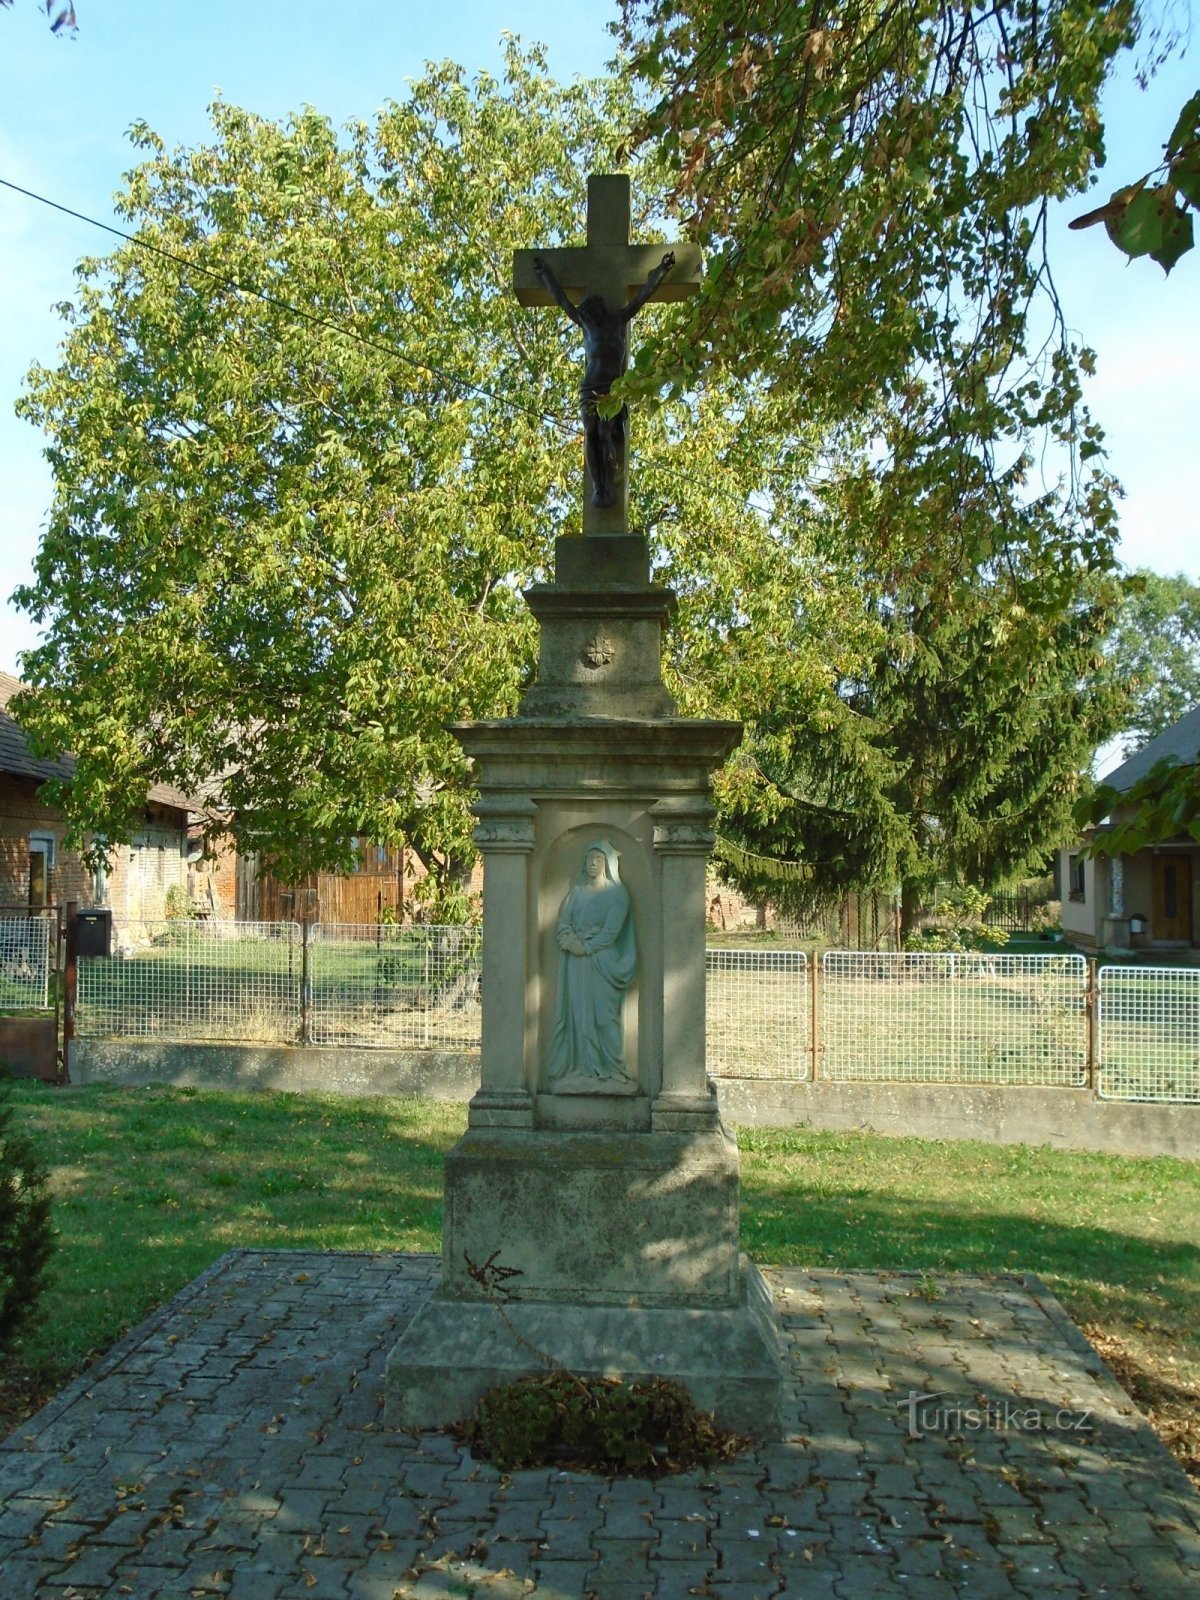 Cruz na frente do nº 2 (Stračovská Lhota)